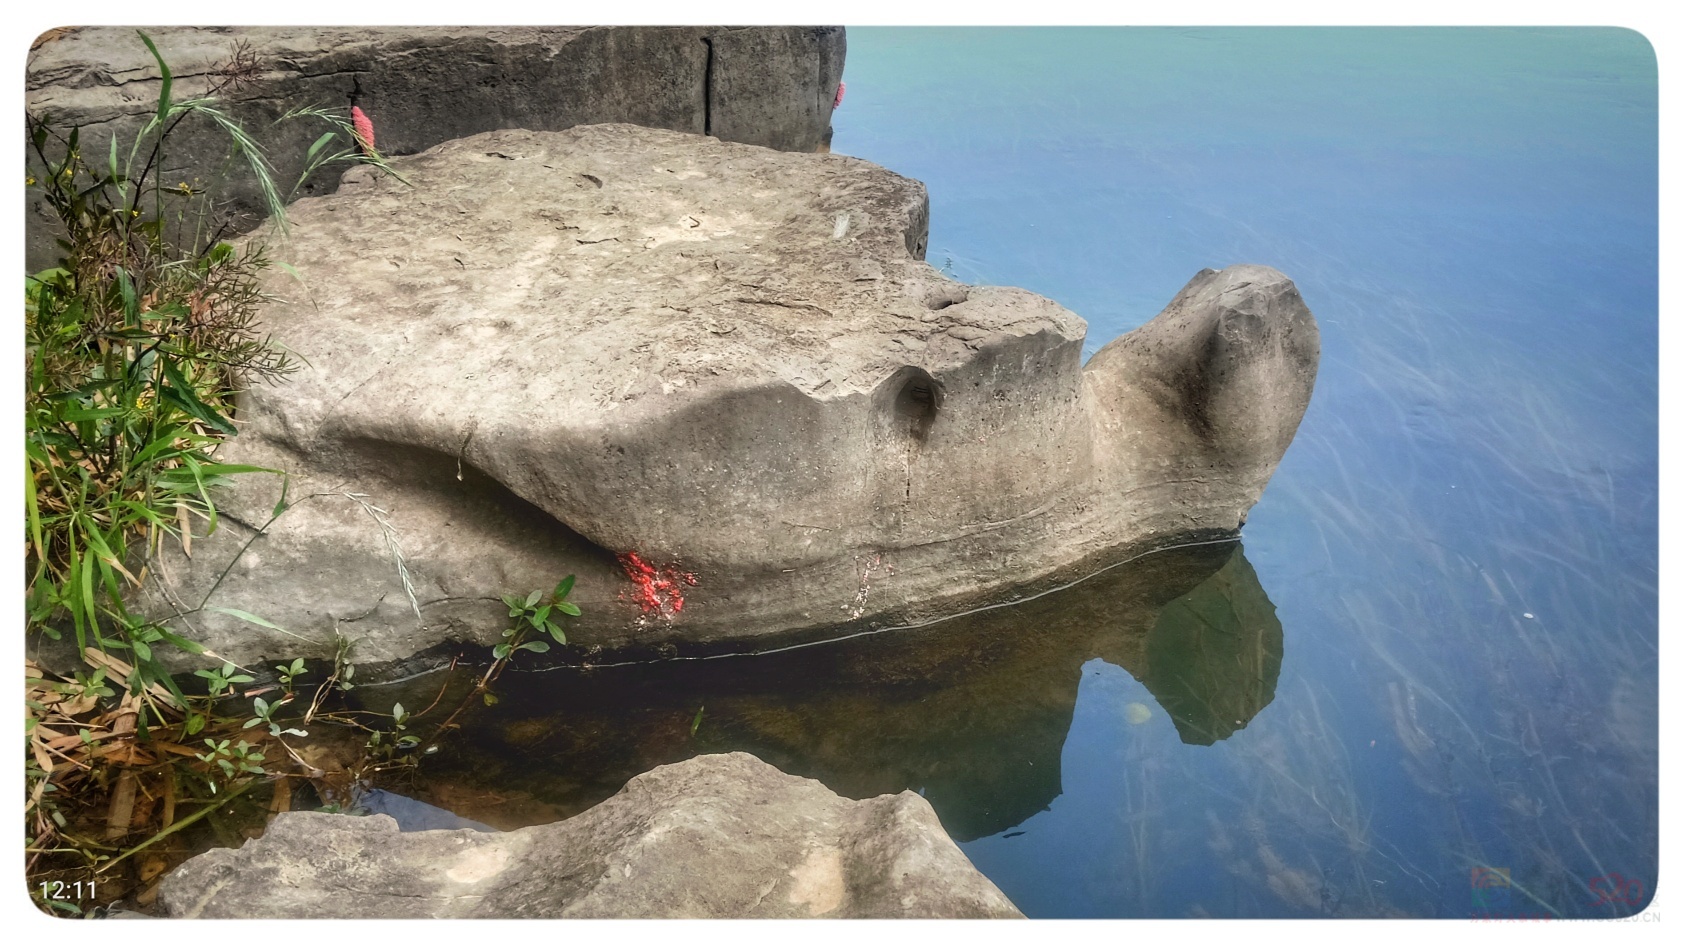 再次发现恭城河边的另一处“石龟”:762 / 作者:陈爱国 / 帖子ID:294693